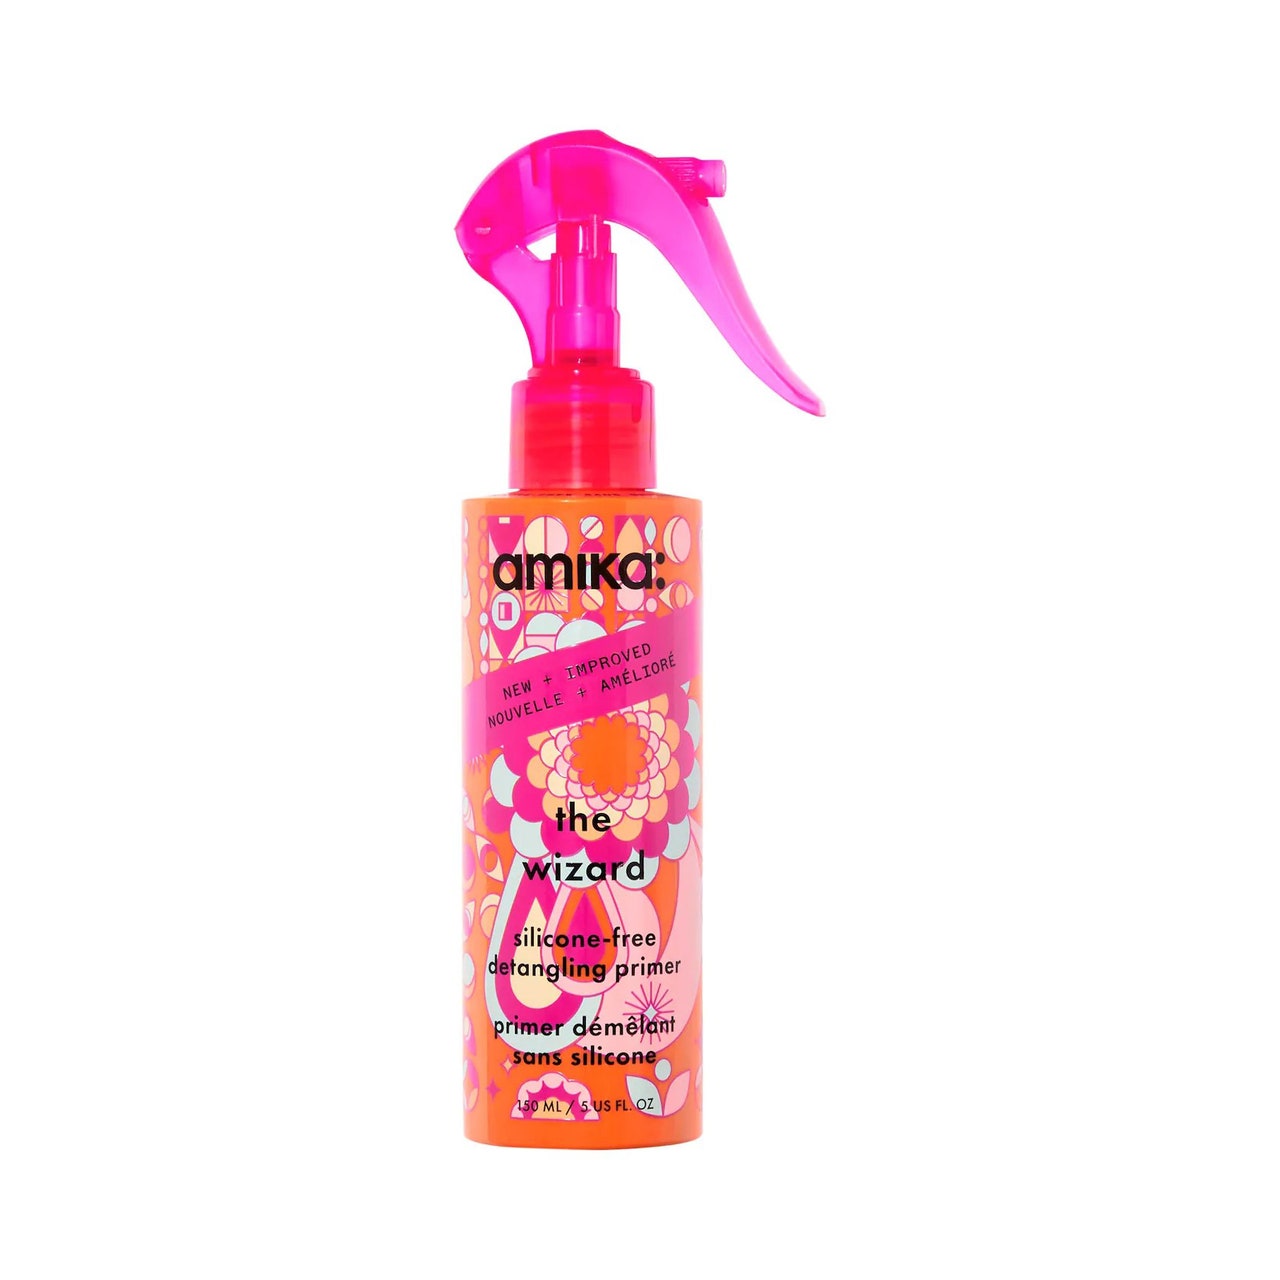 Amika The Wizard Detangling Hair Primer rosa und orangefarbene Flasche mit grafischem Blumendruck und rosa Sprühkappe auf weißem Hintergrund